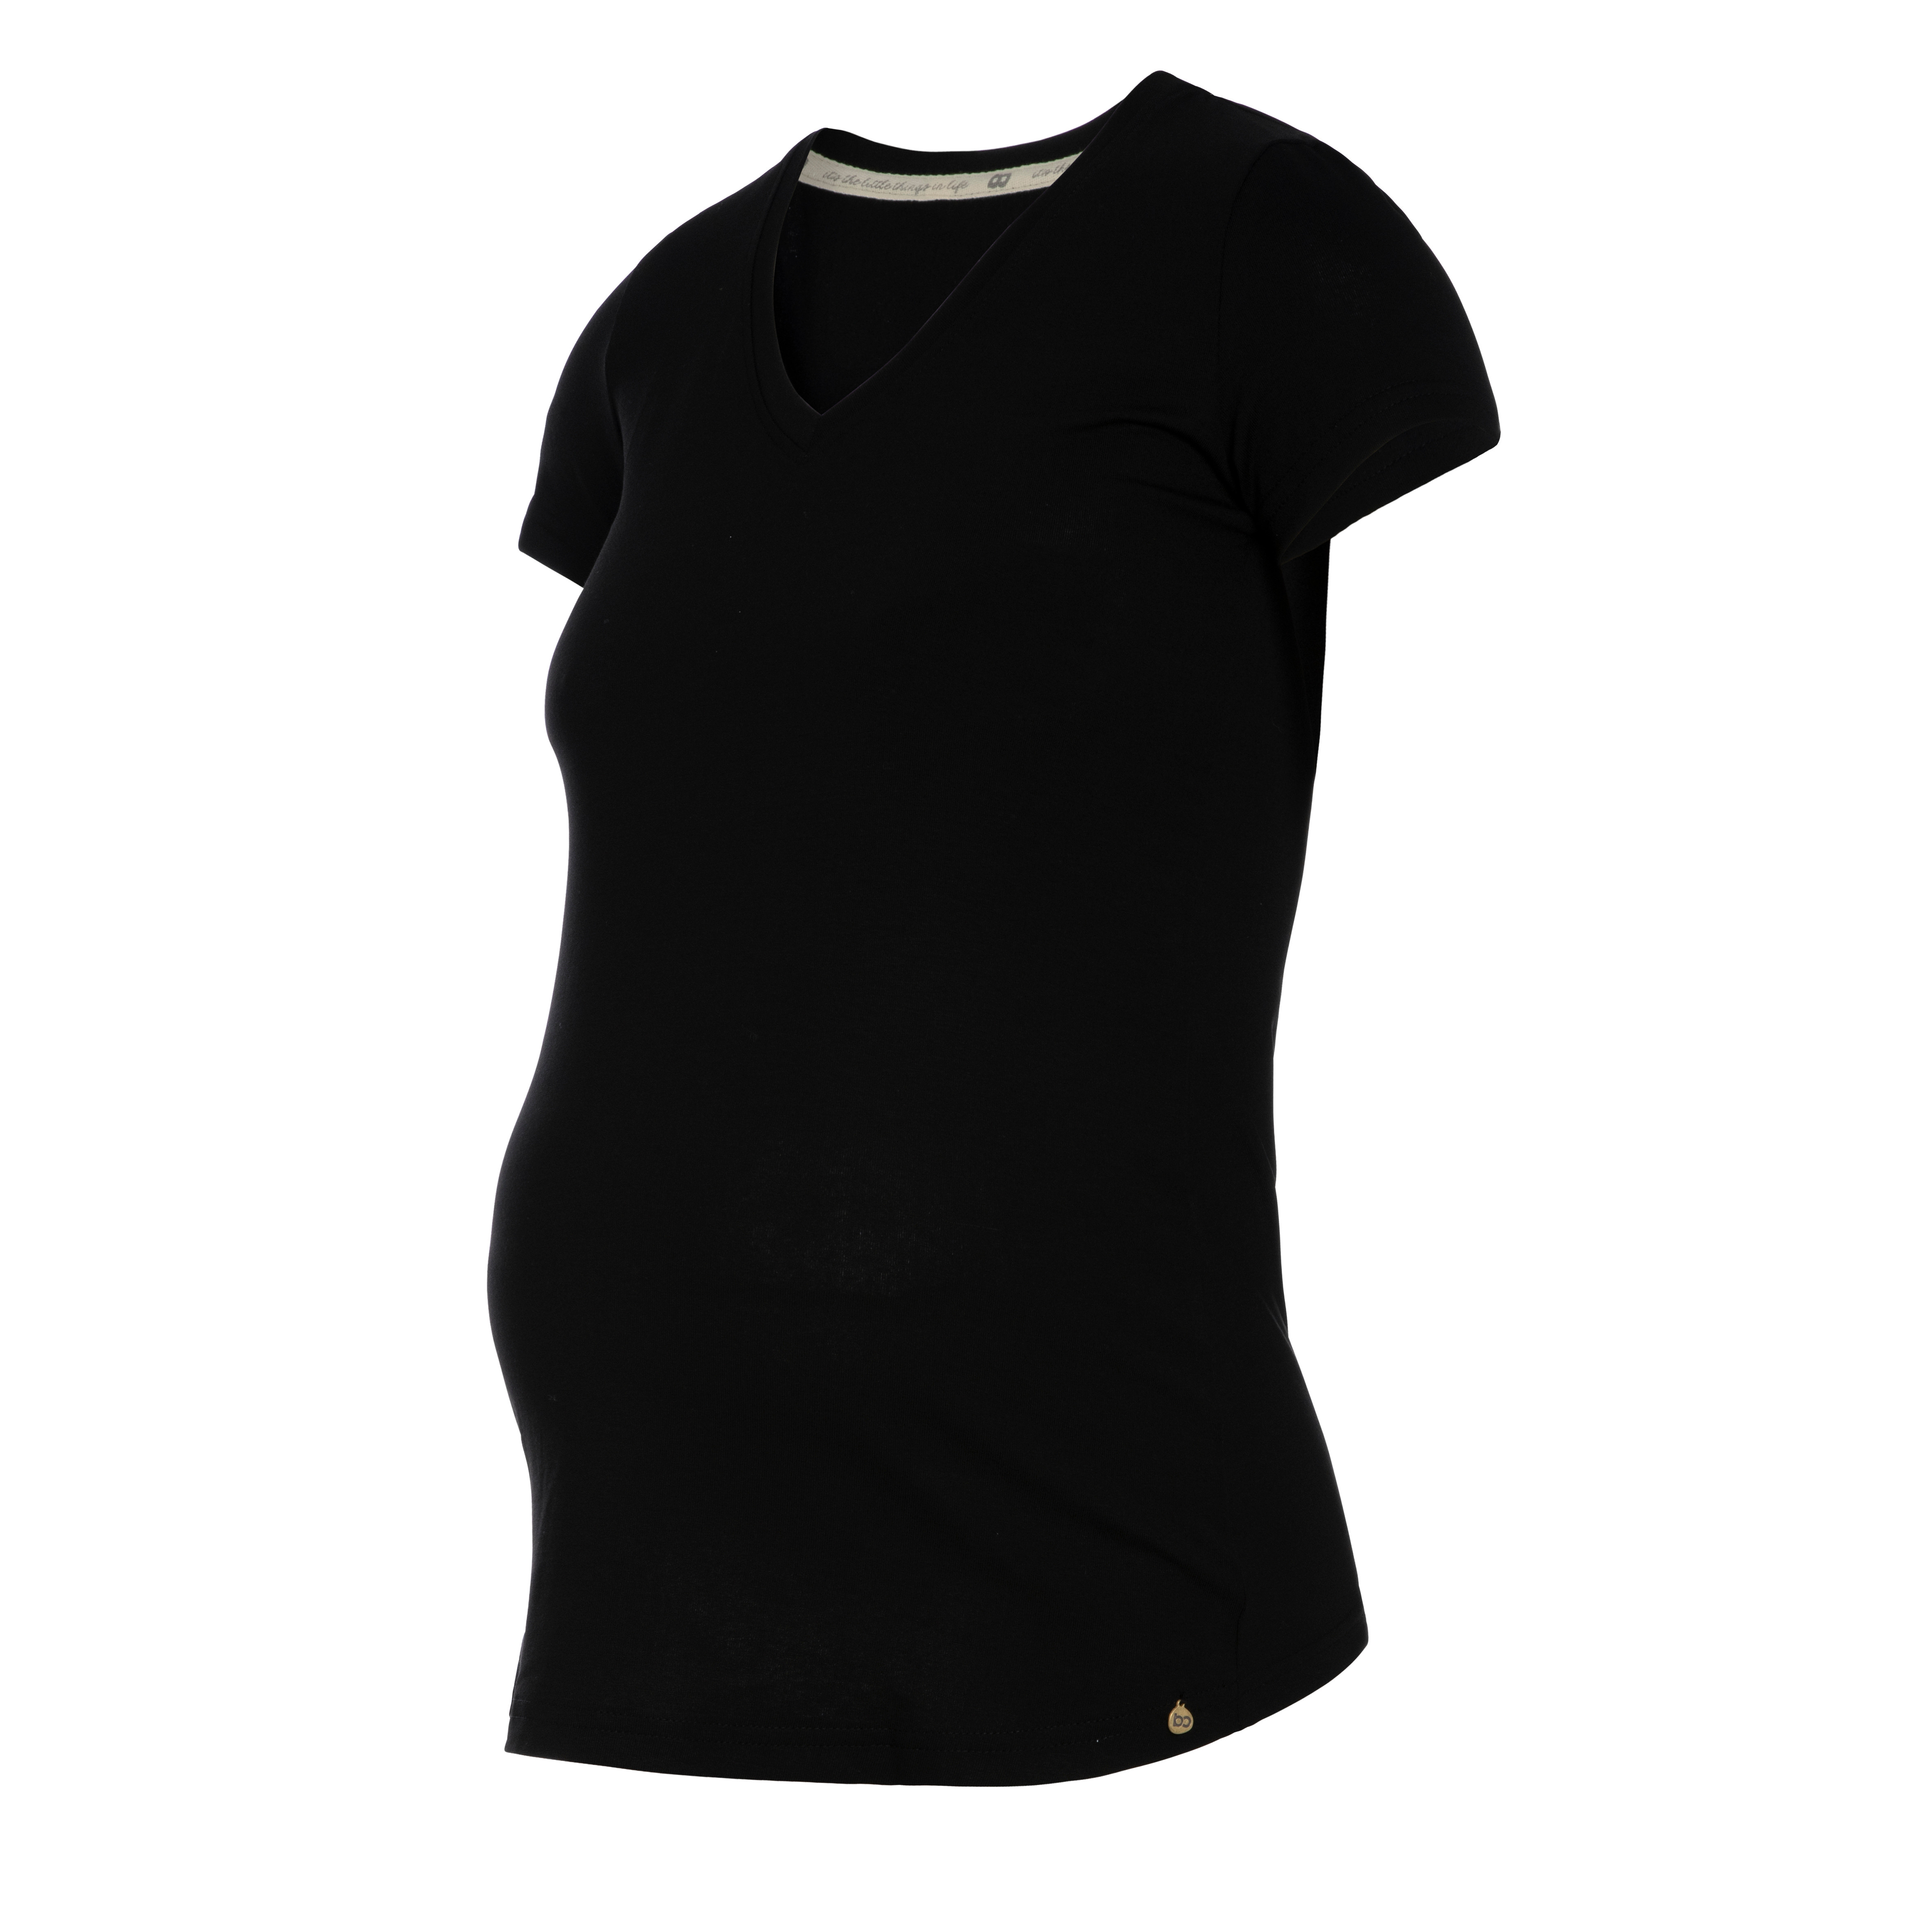 Maternity T-shirt Glow black - L